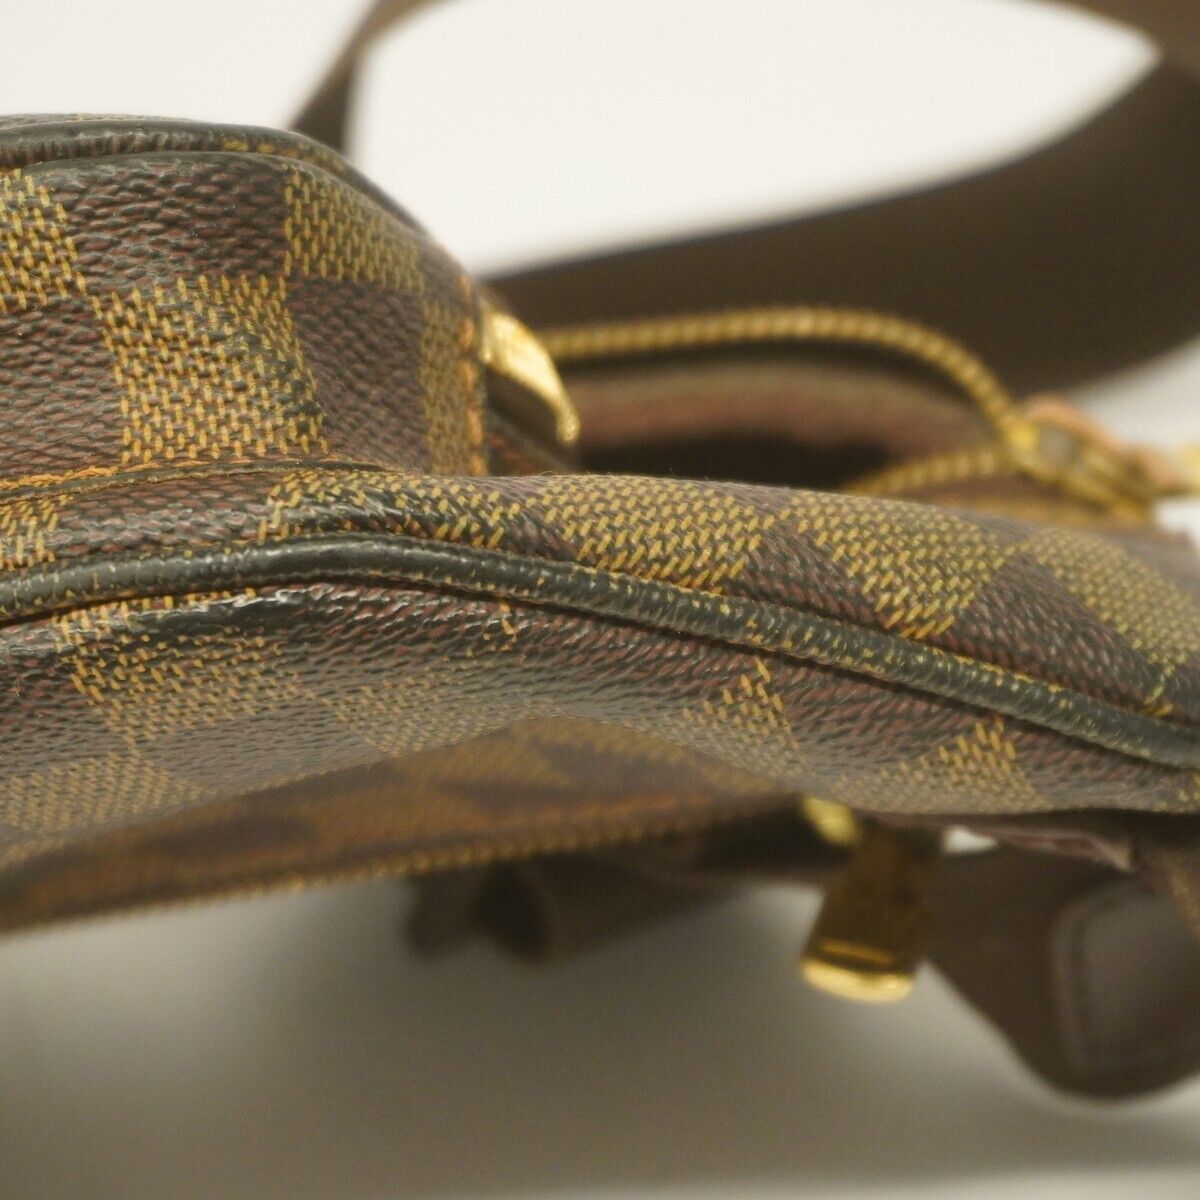 Louis Vuitton N51172 Damier Line Melville Bum Bag W31.5cm x H15cm Waist Bag  BRW